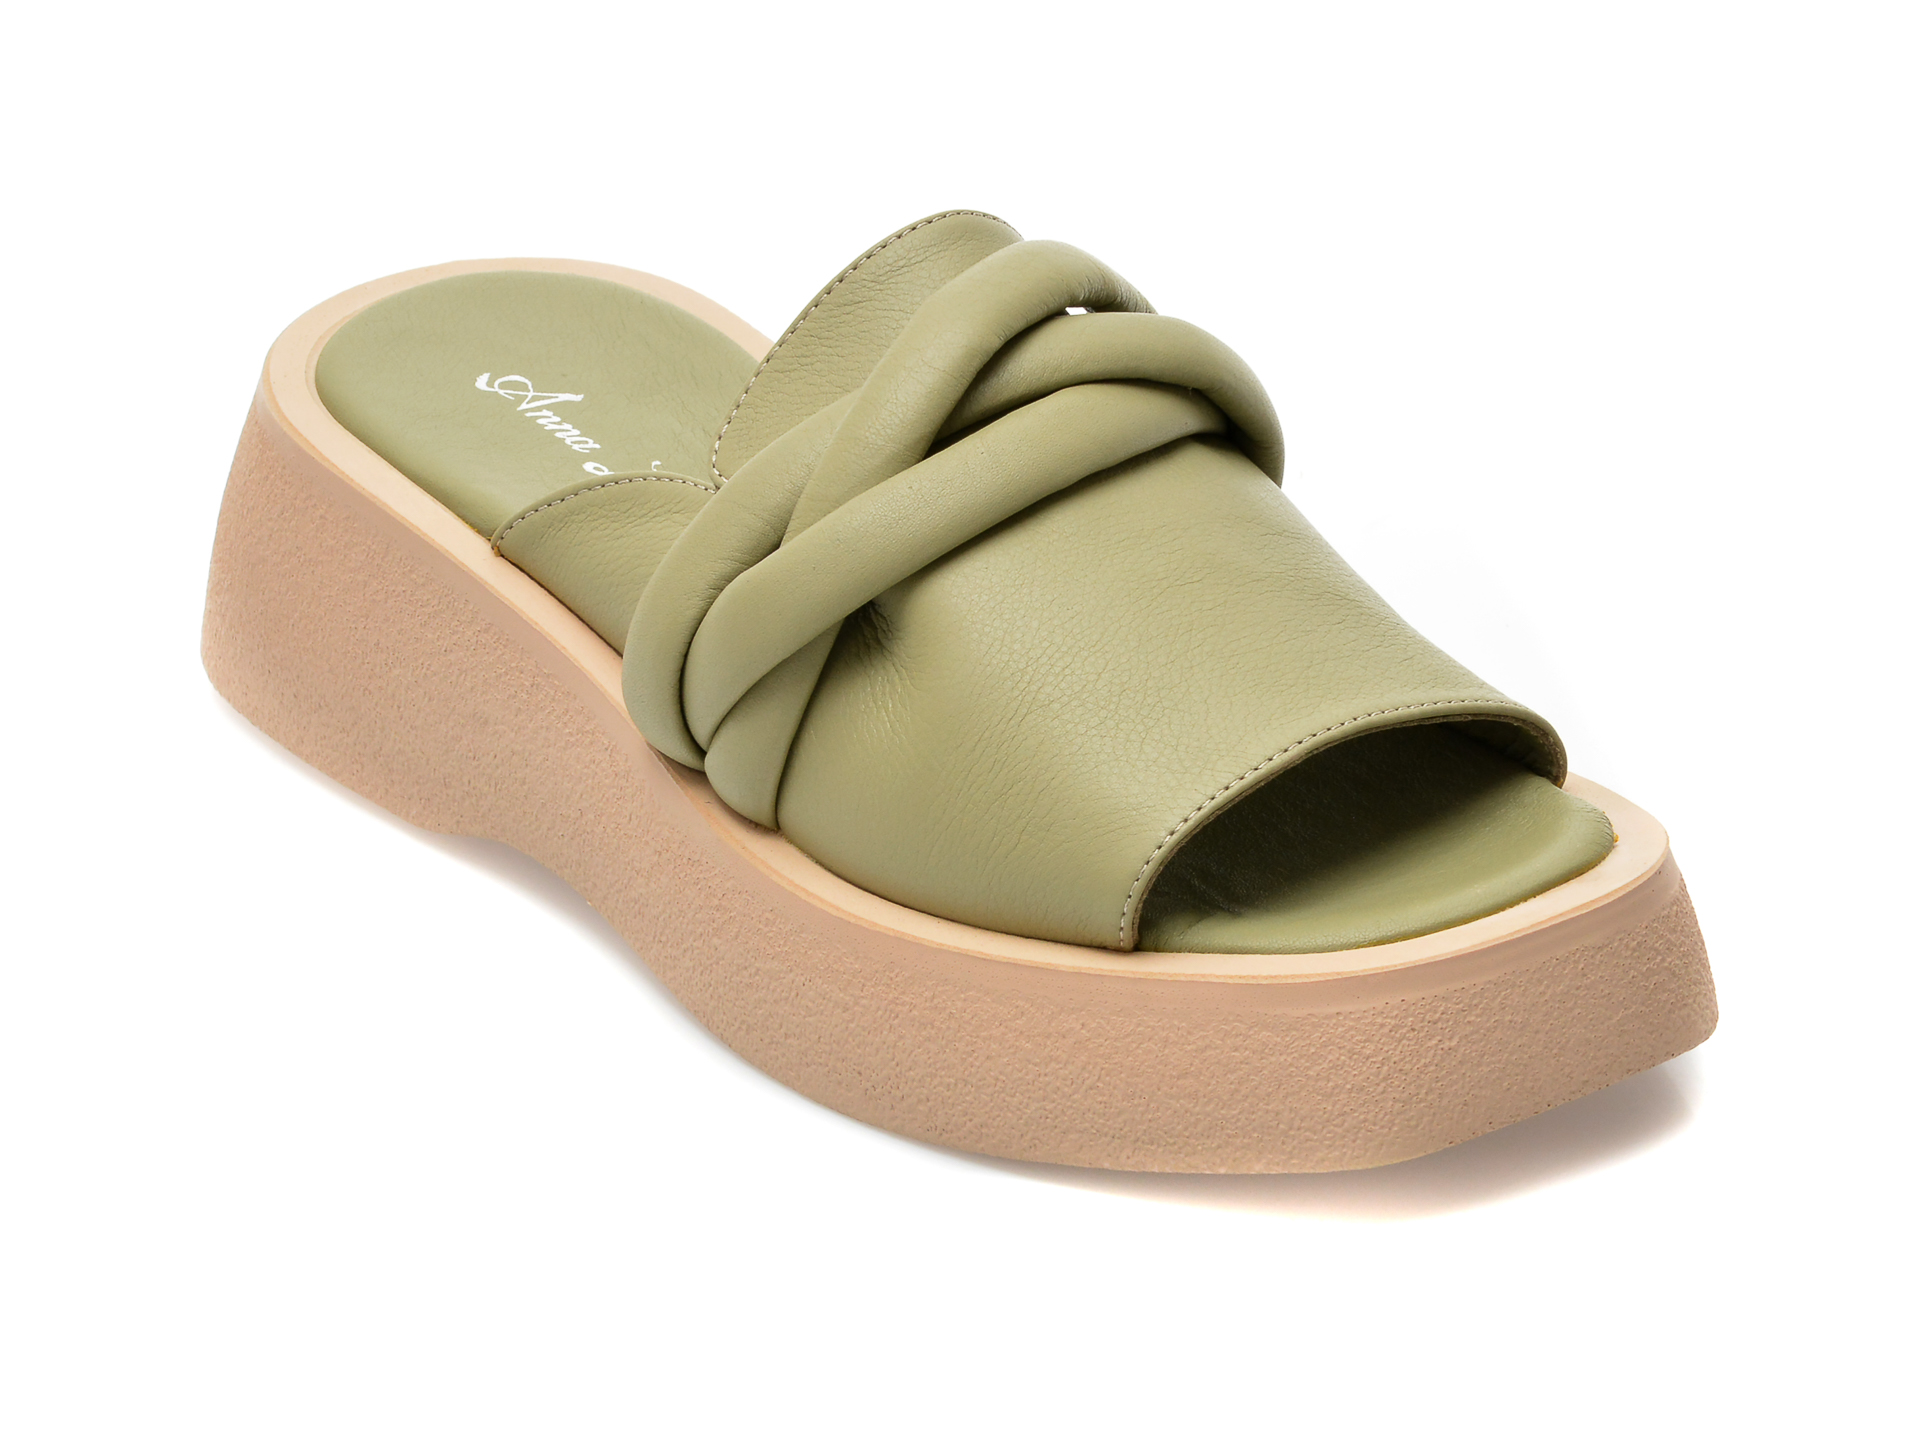 Papuci ANNA LUCCI verzi, 3001, din piele naturala /femei/papuci imagine noua